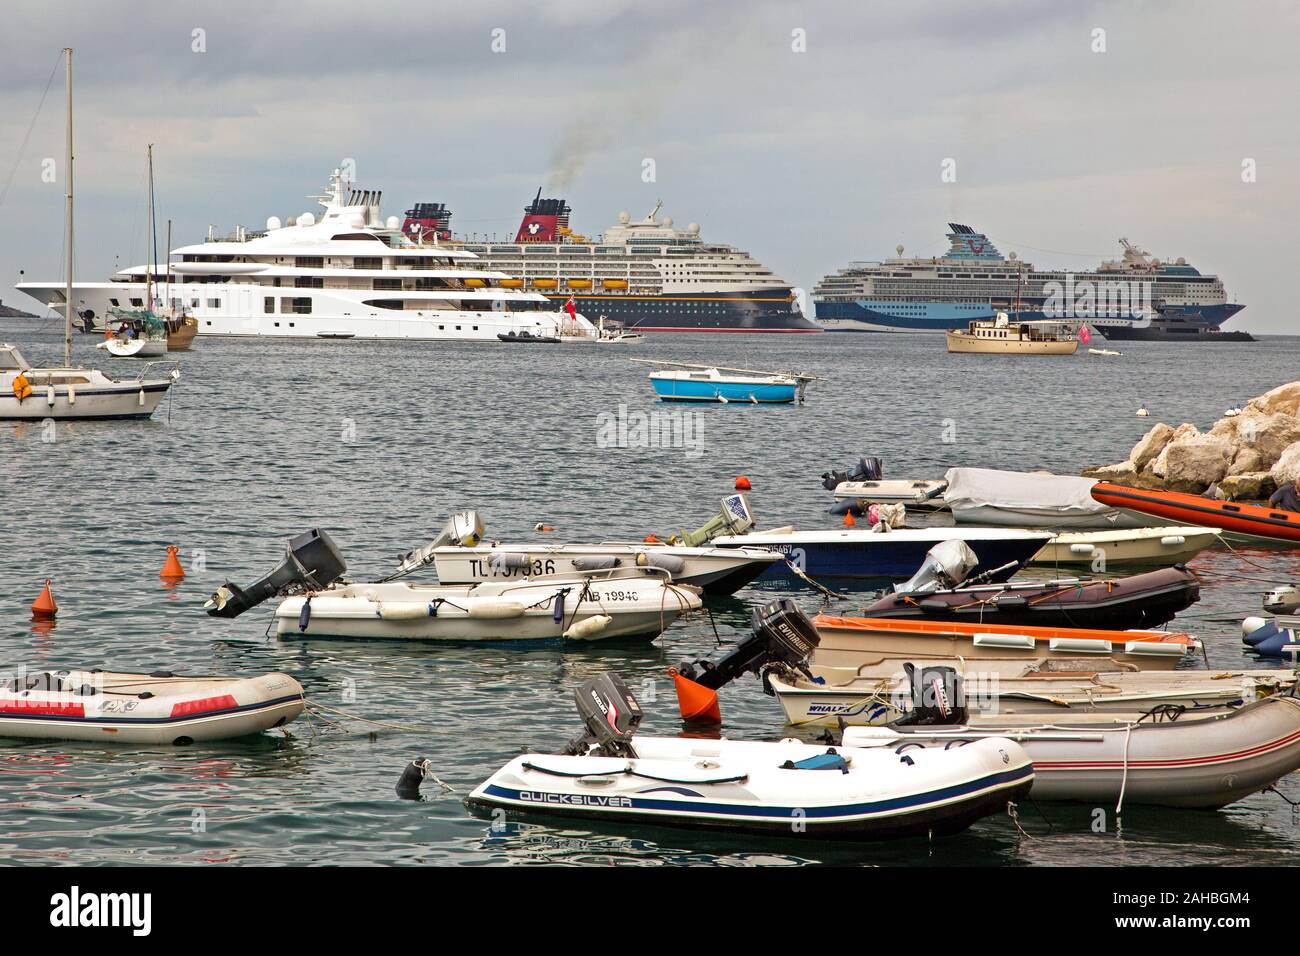 Piccolo zodiacs sul foreshore con yacht privato Quantum blu, Disney Cruise Ship la magia e la nave da crociera Marella Blue in background in porto Foto Stock